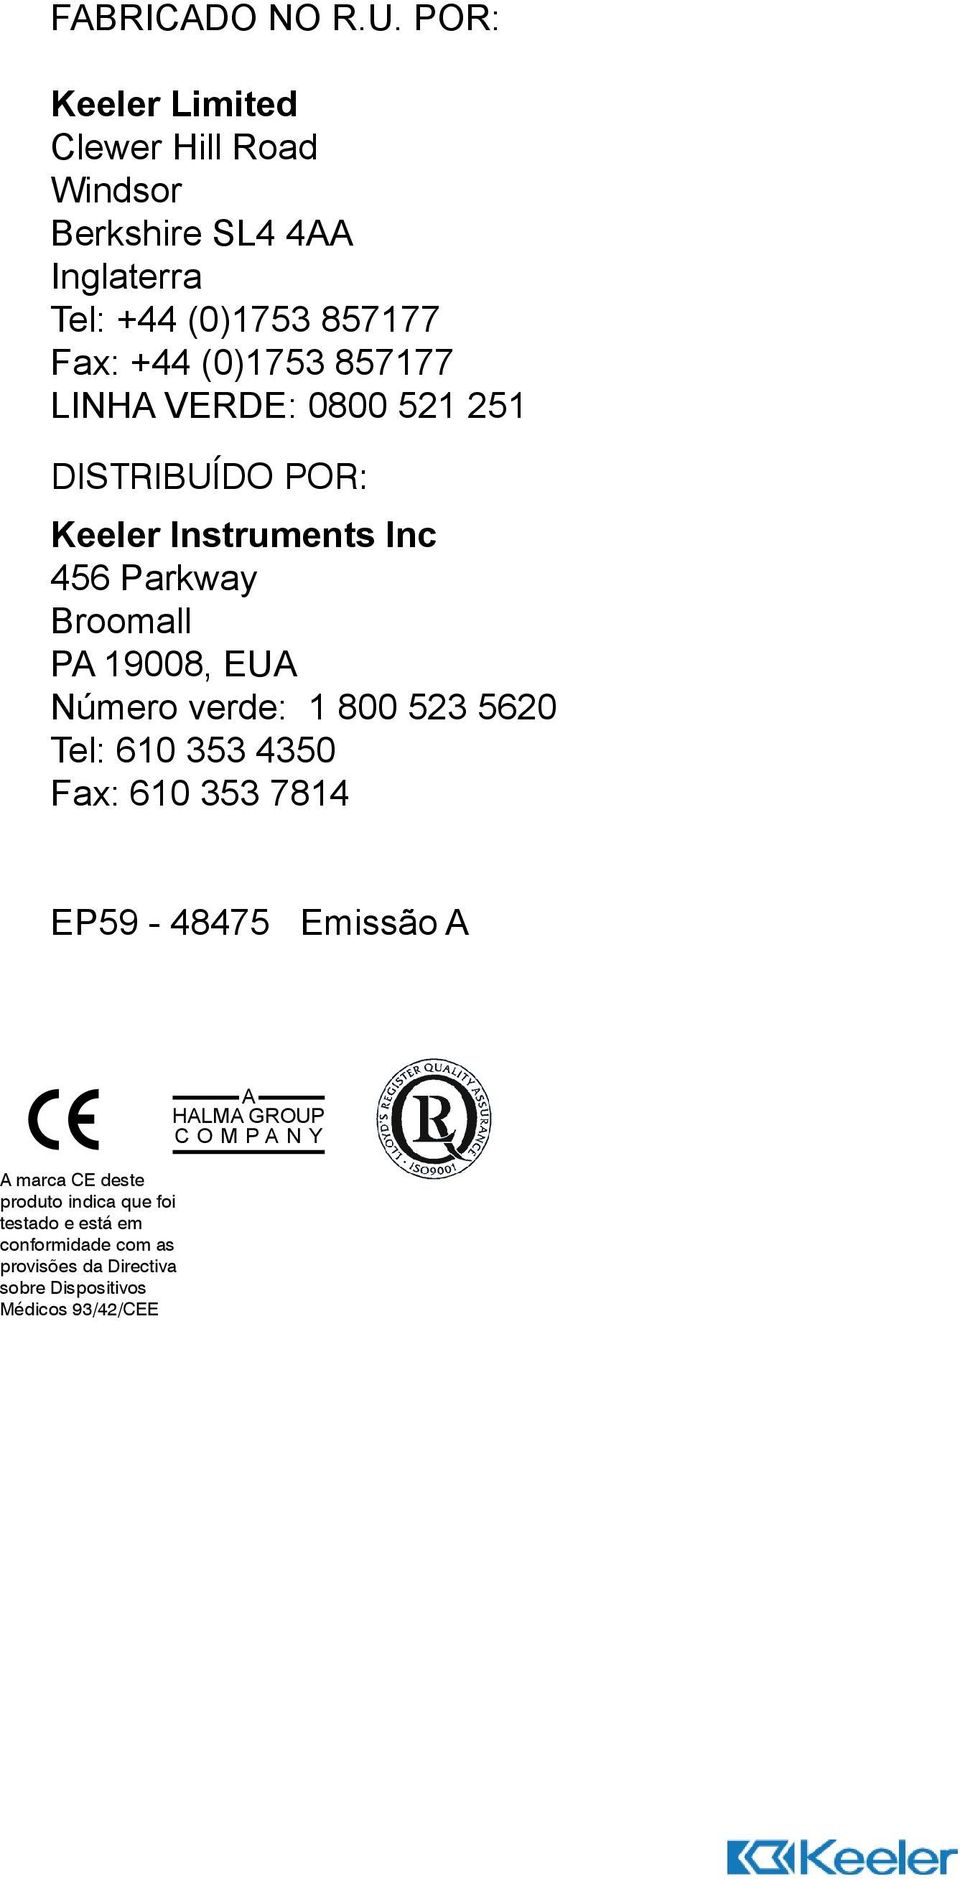 (0)1753 857177 Fax: +44 (0)1753 857177 LINHA VERDE: 0800 521 251 Keeler Instruments